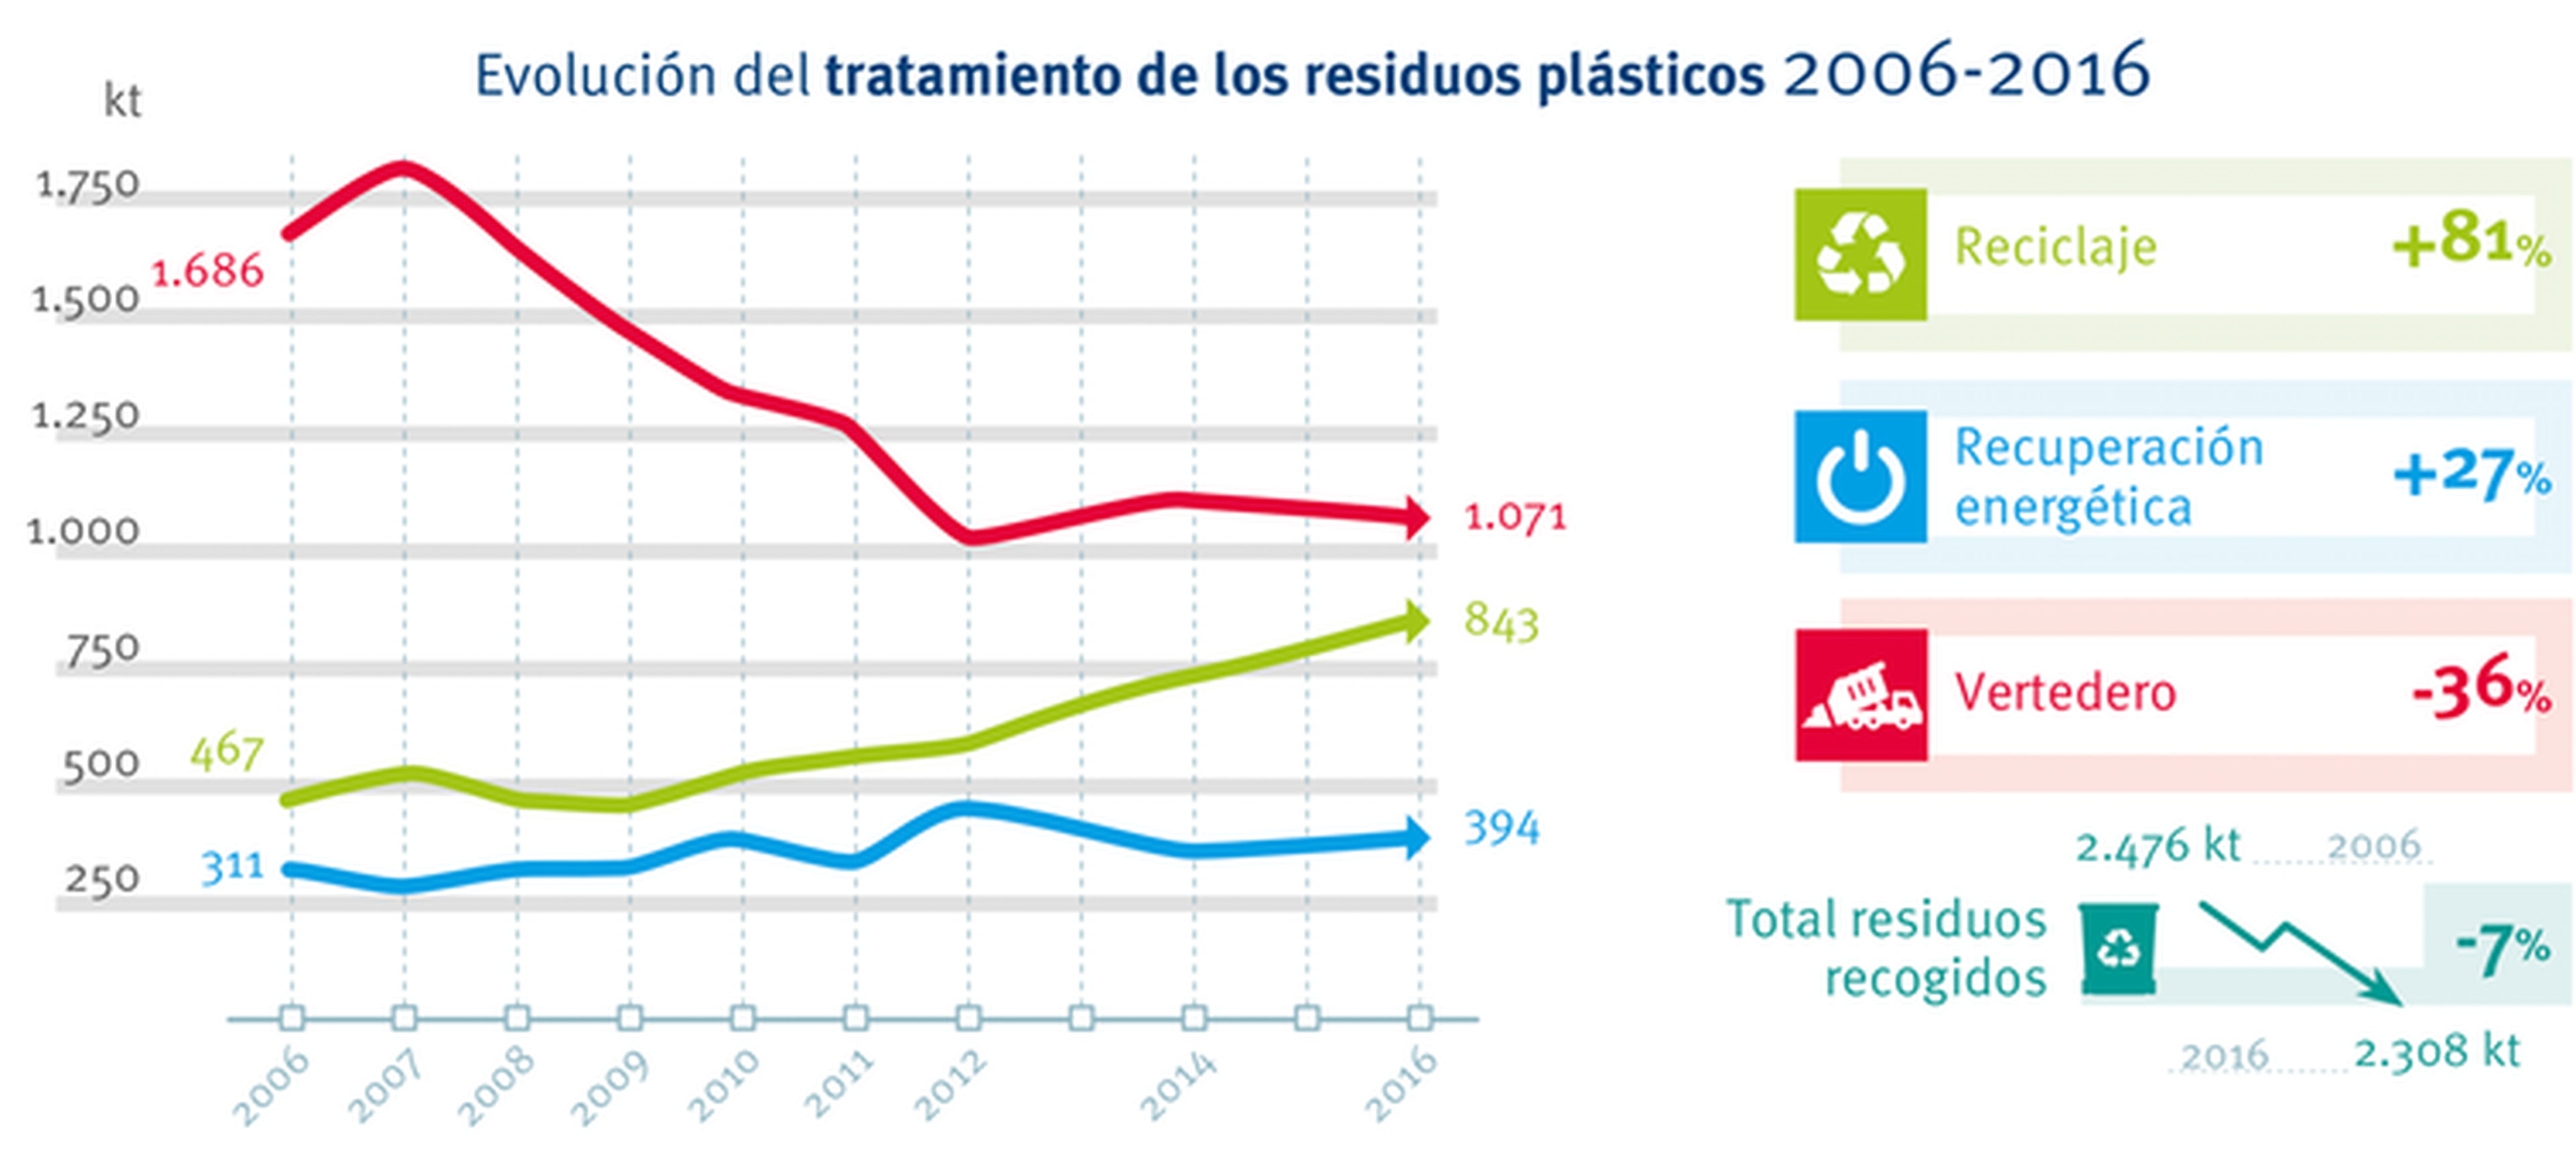 Evolución del tratamiento de residuos plásticos en España (2006-2016).